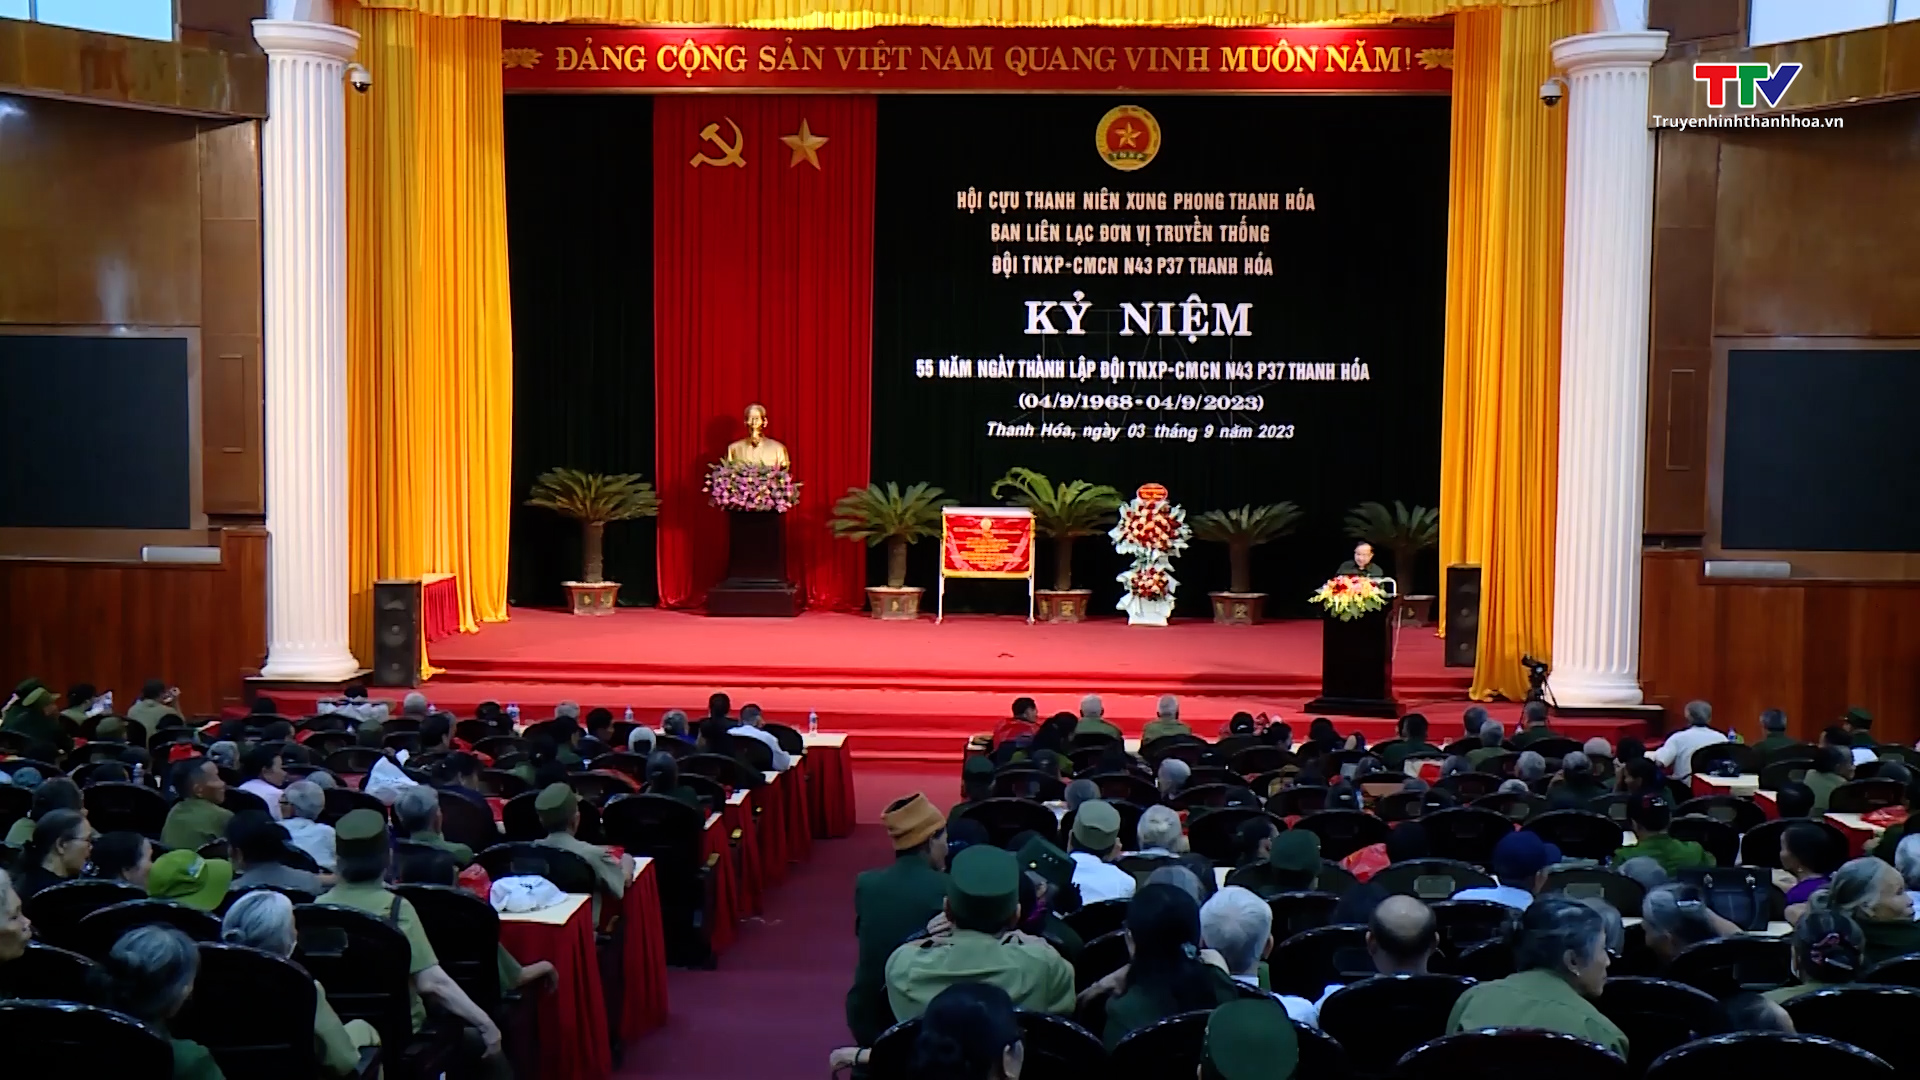 Kỷ niệm 55 năm ngày thành lập Đội Thanh niên xung phong N43 P37 Thanh Hóa - Ảnh 2.